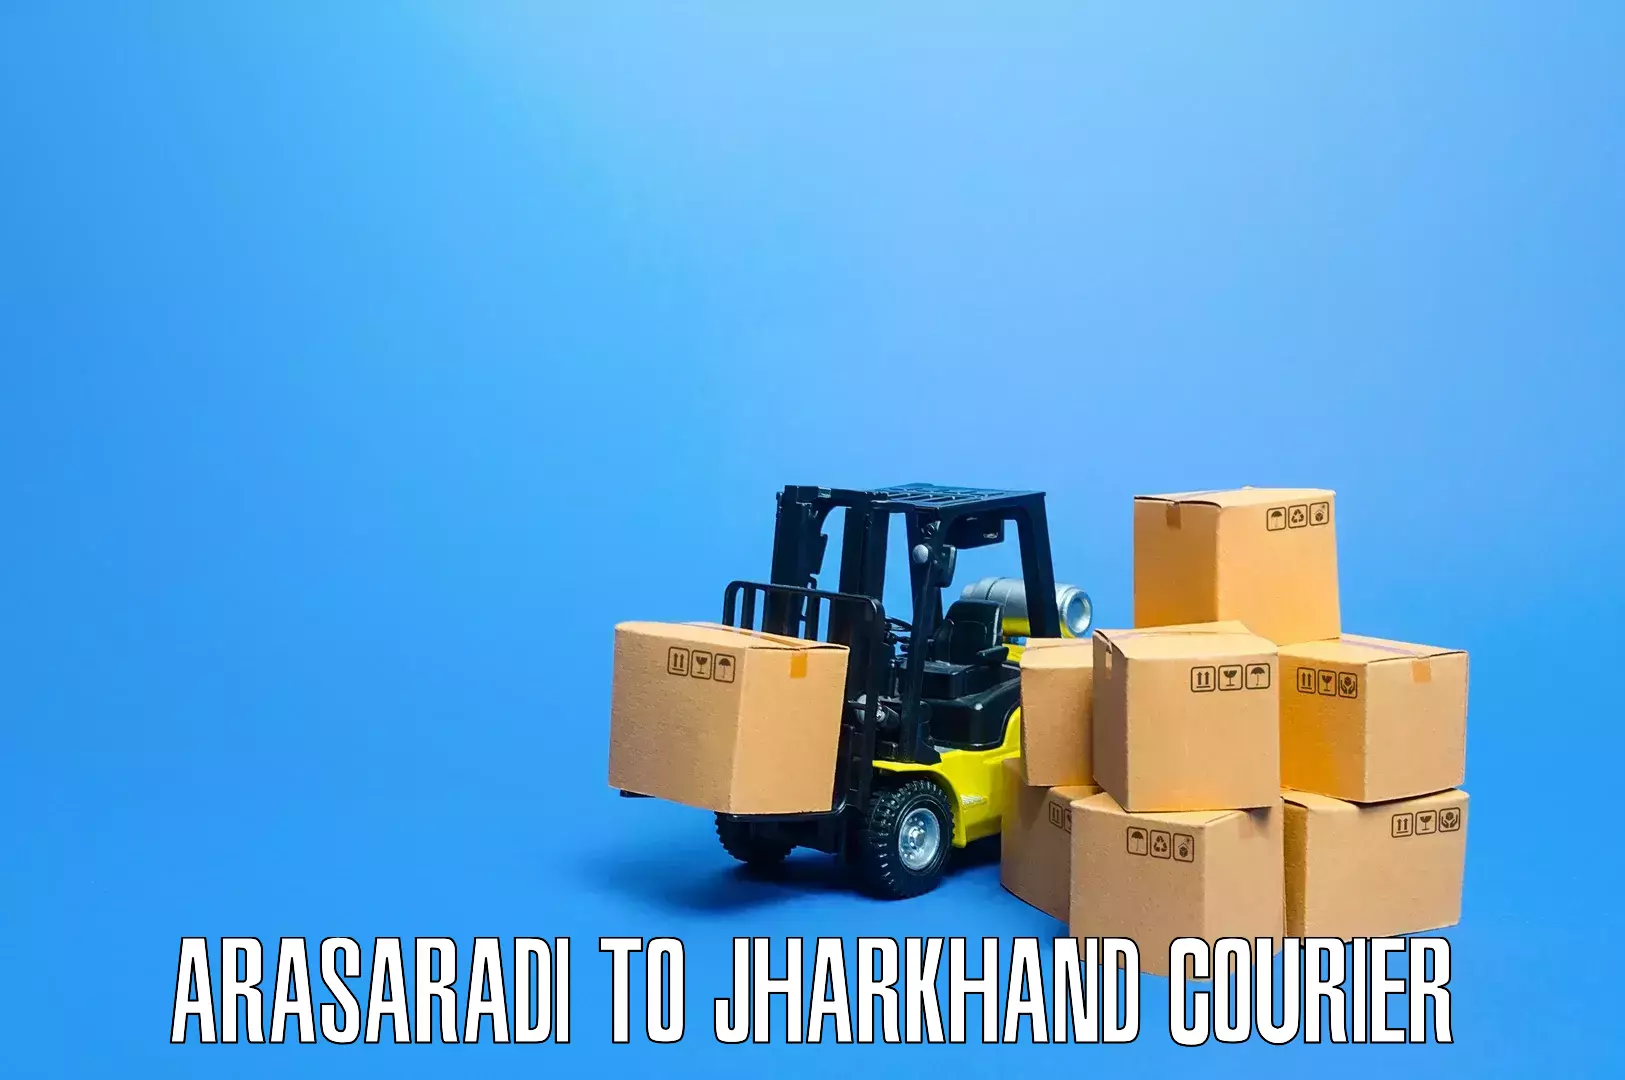 Furniture moving assistance Arasaradi to Garhwa